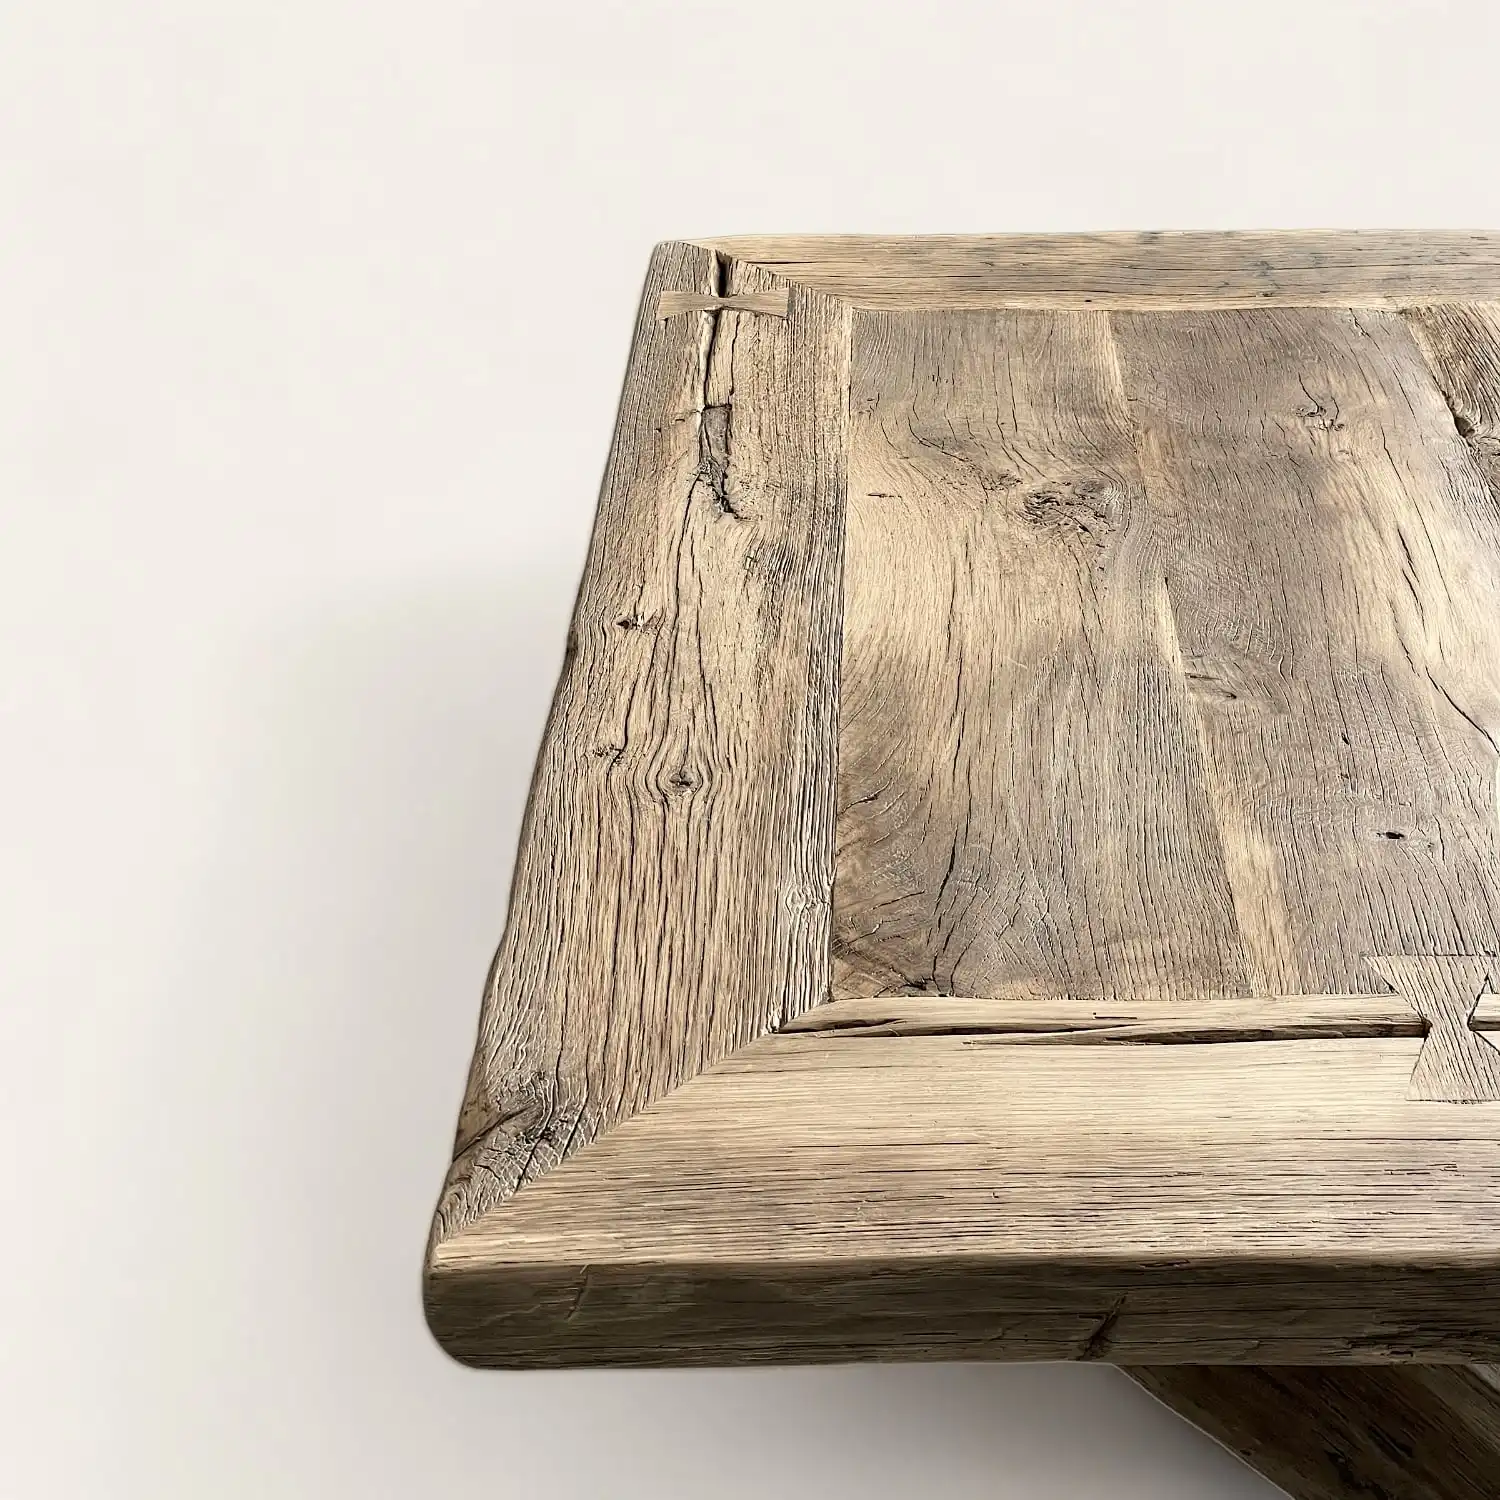  Gros plan sur le bord d'une table rustique mettant en évidence la texture et les fissures du bois 